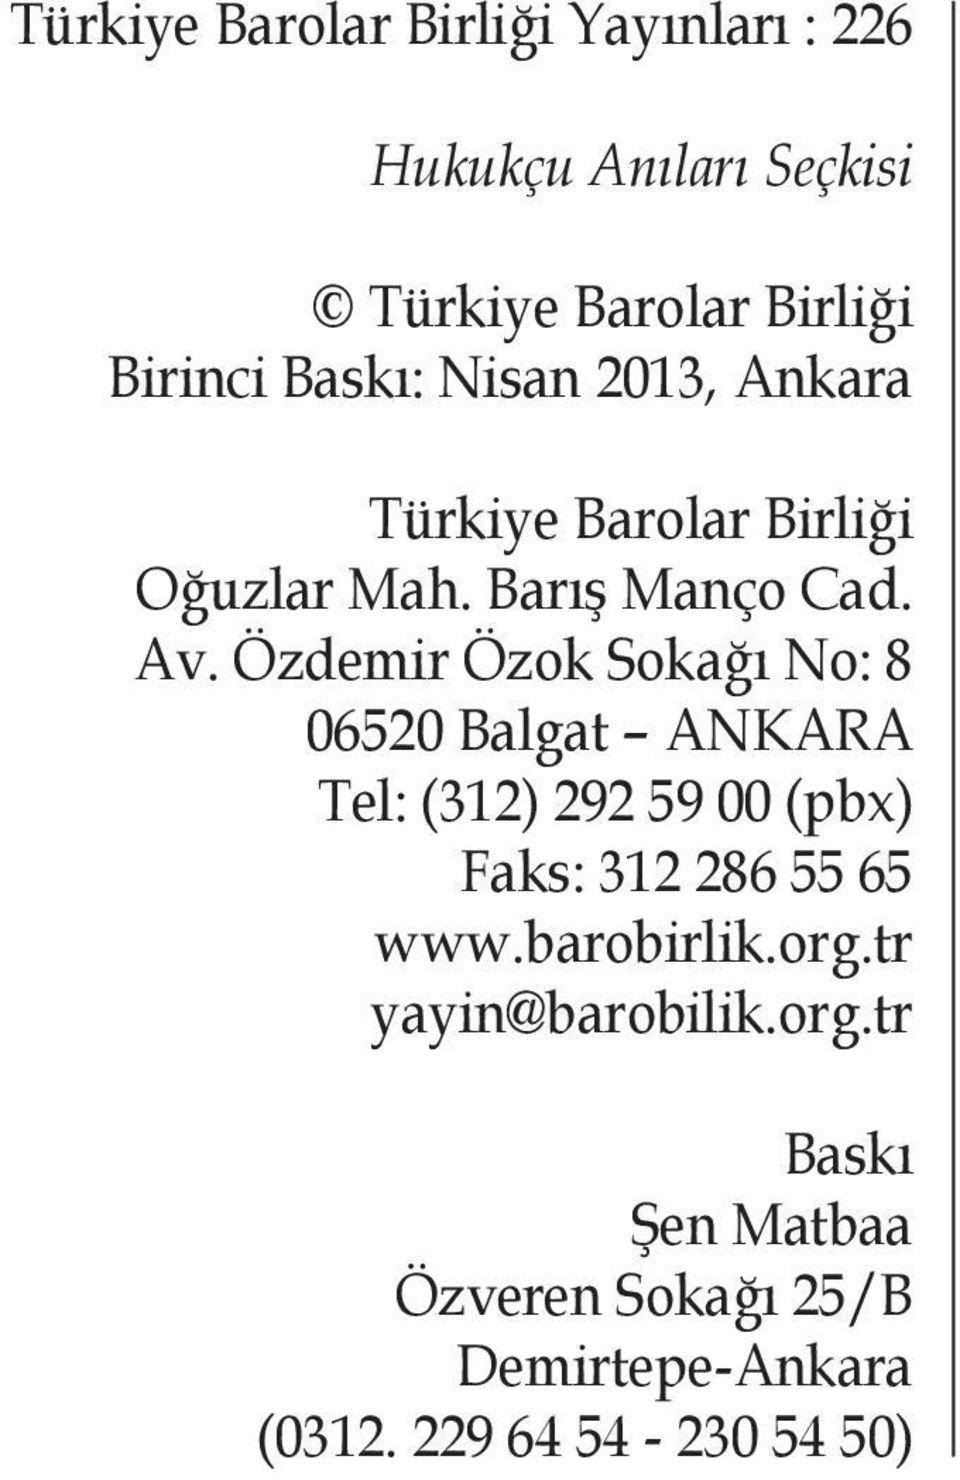 Özdemir Özok Sokağı No: 8 06520 Balgat ANKARA Tel: (312) 292 59 00 (pbx) Faks: 312 286 55 65 www.